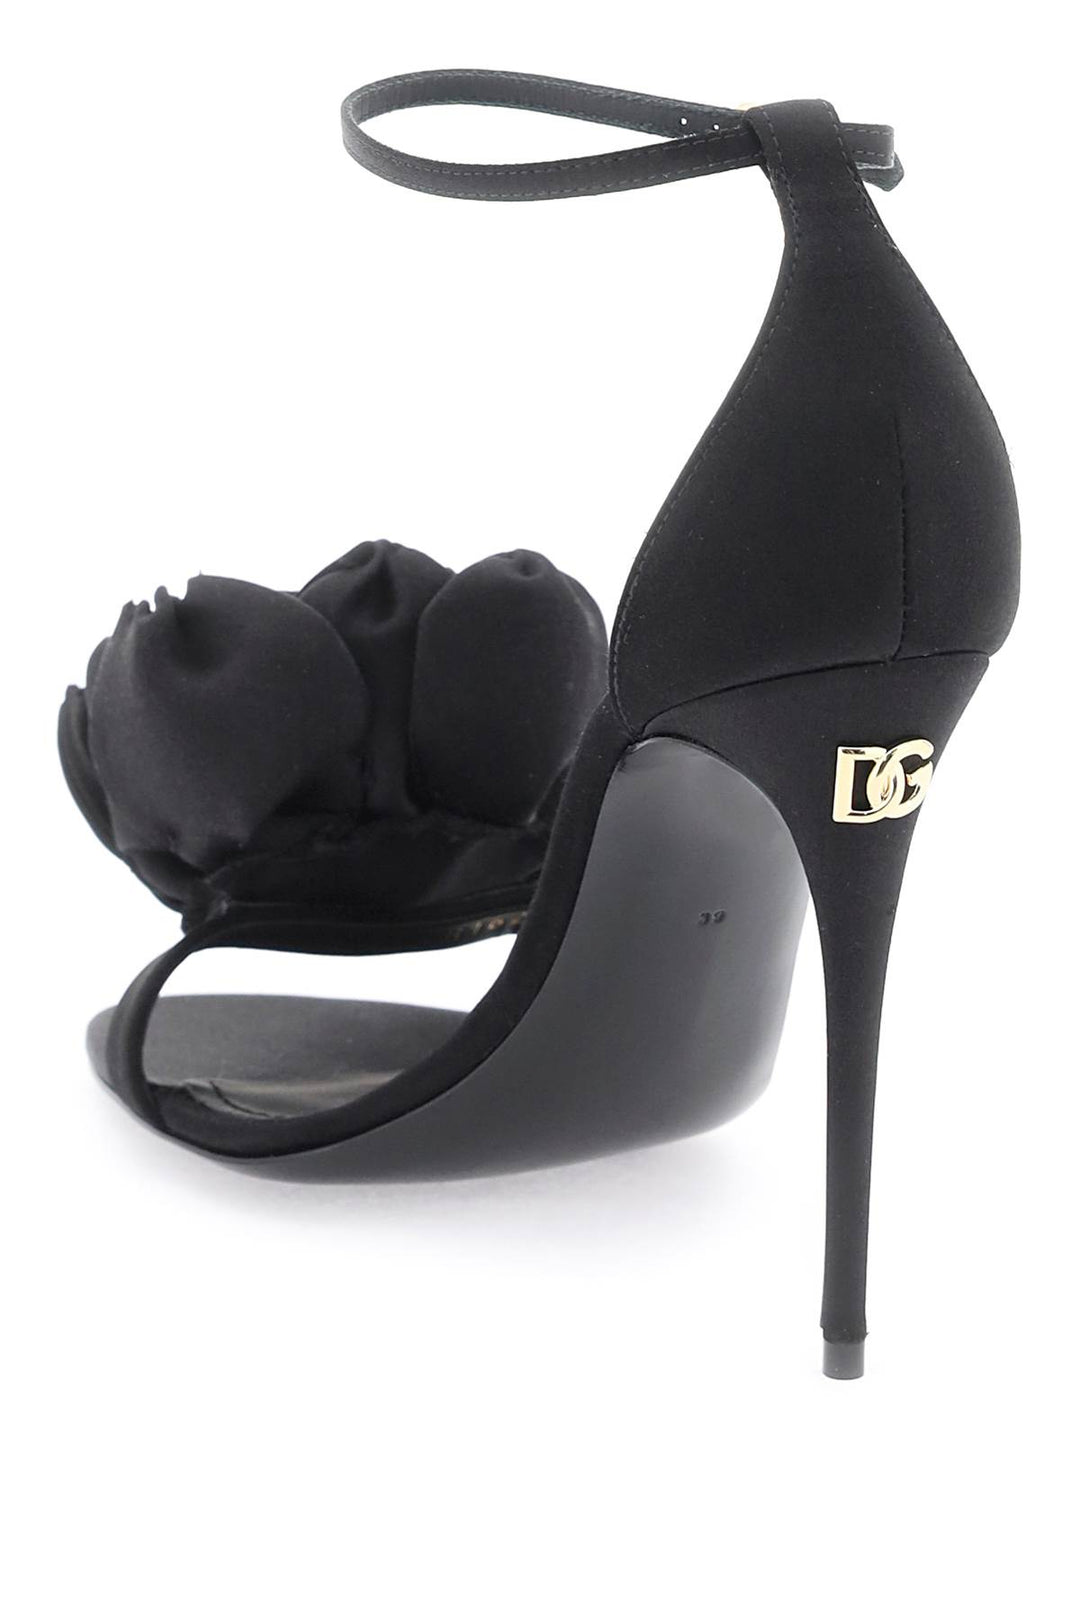 Dolce & Gabbana Satin Sandals   Black